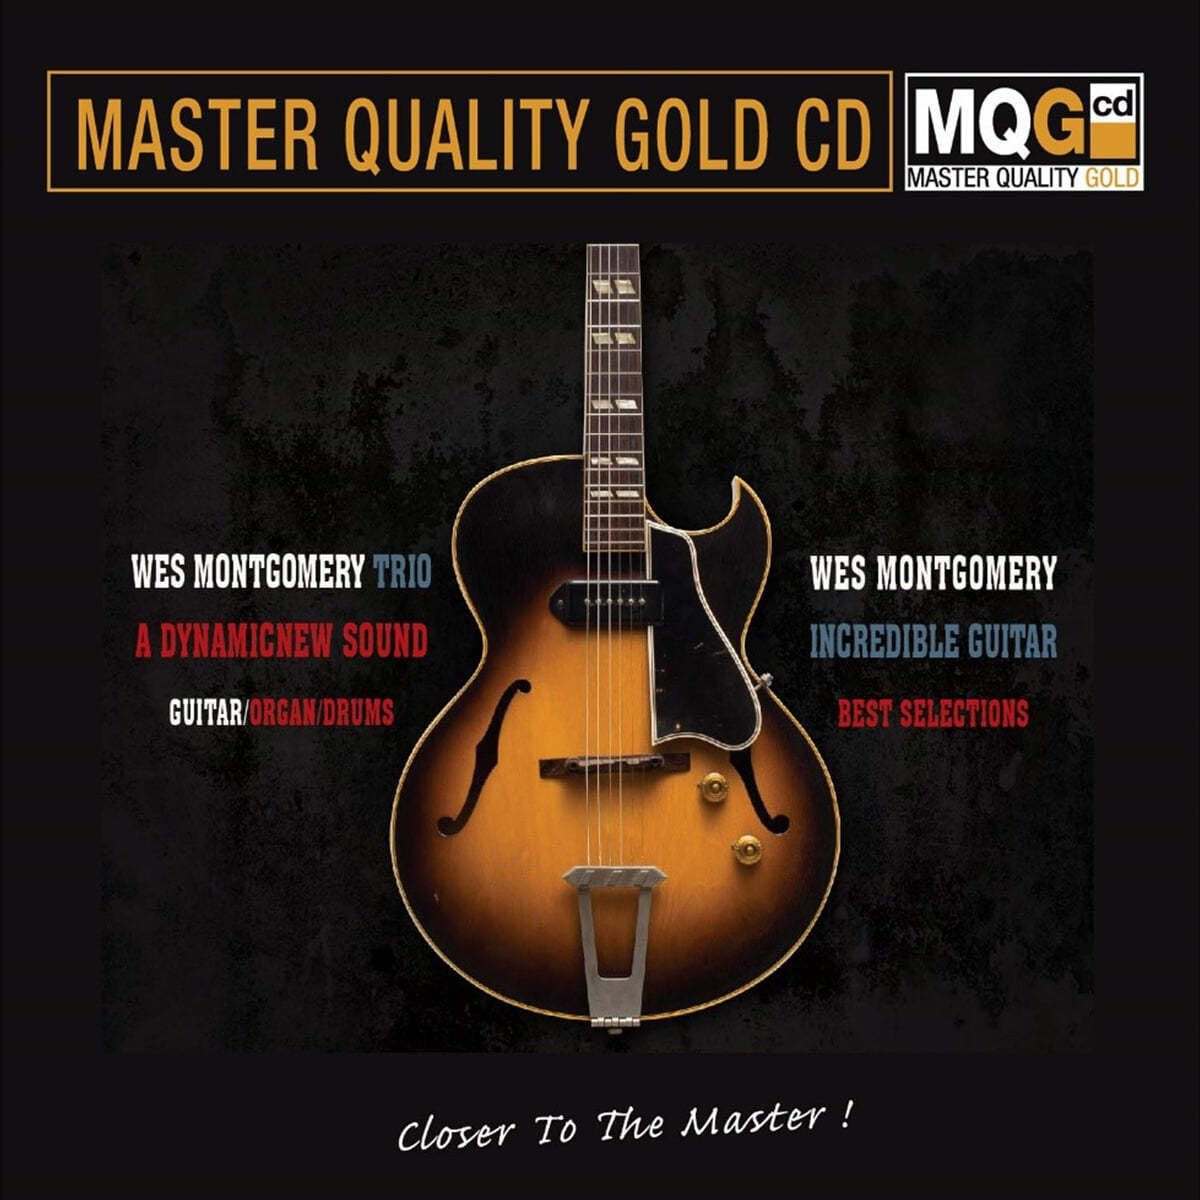 웨스 몽고메리 트리오 베스트 컬렉션 (The Wes Montgomery Trio Best Selections)